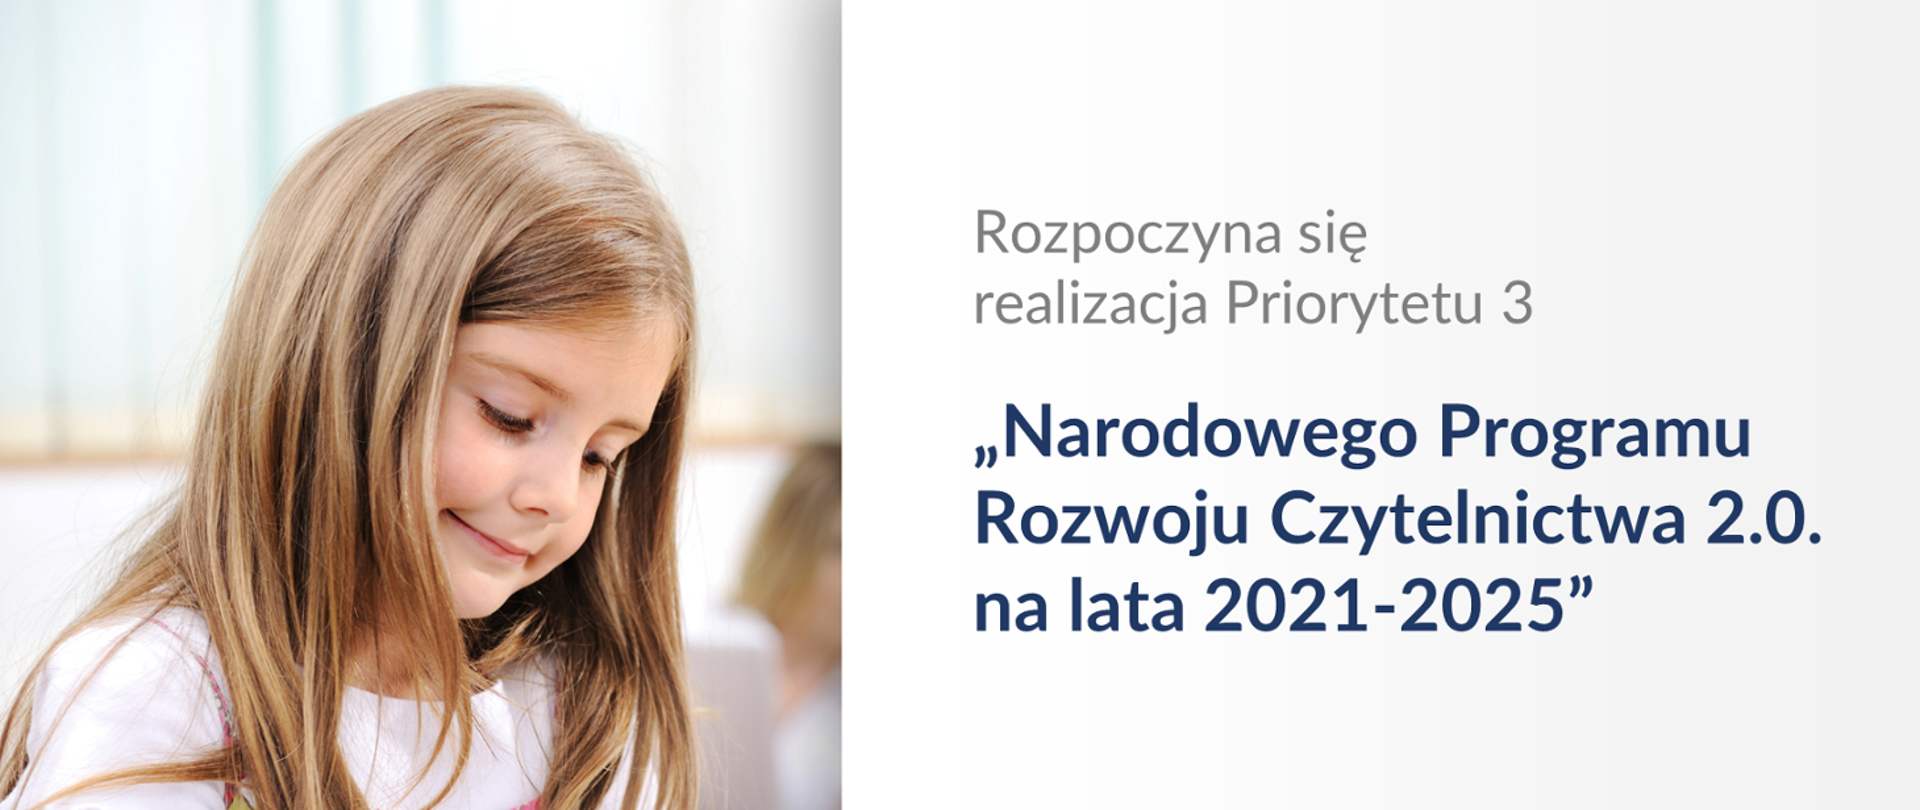 Narodowy Program rozwoju Czytelnictwa 2.0 na lata 2021-2025